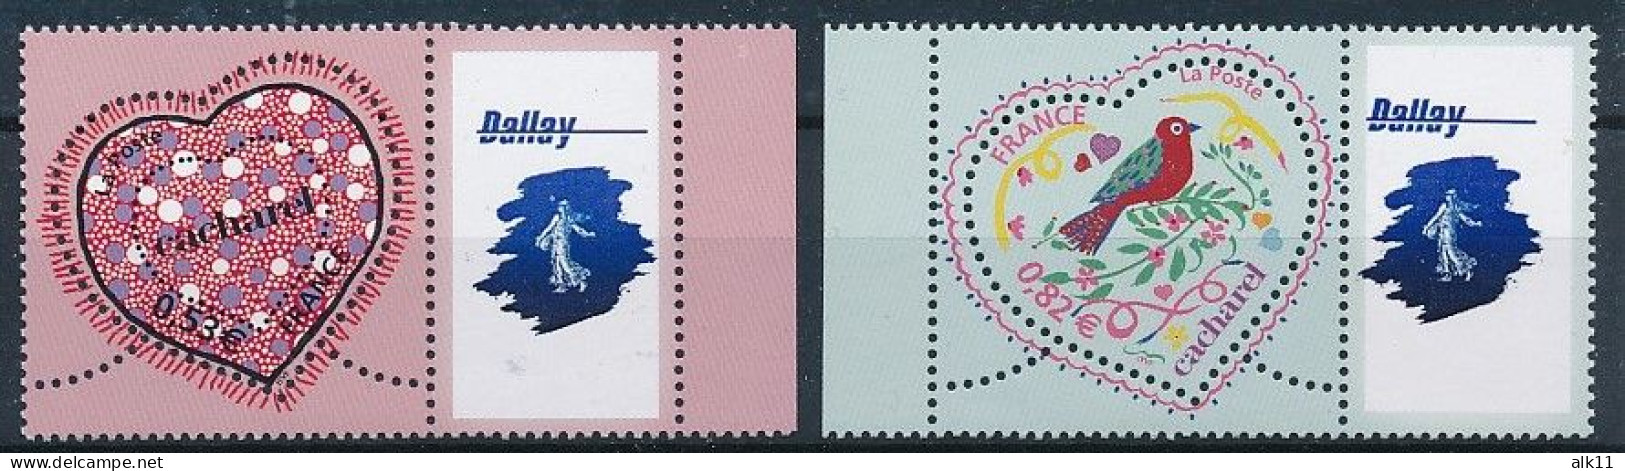 France 2005 - 3747Aa Et 3748Aa Deux Timbres Personnalisés Logo Dallay Saint-Valentin - Neuf - Nuovi